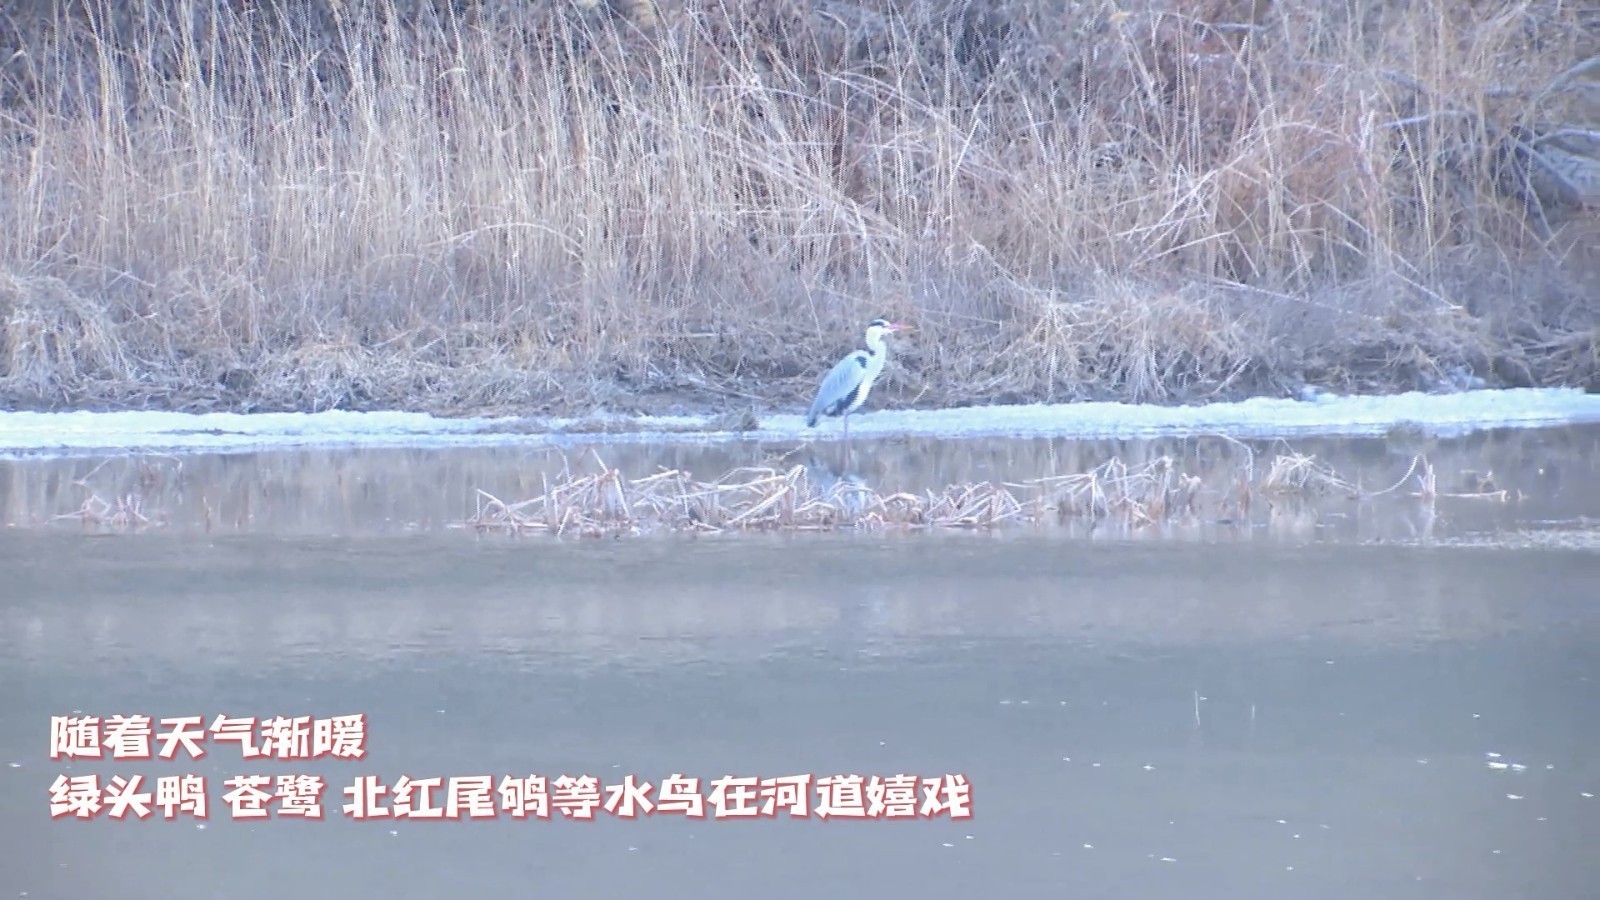 怀柔区汤河口镇的河面上迎来了二十多只绿头鸭、北红尾鸲、苍鹭等水鸟